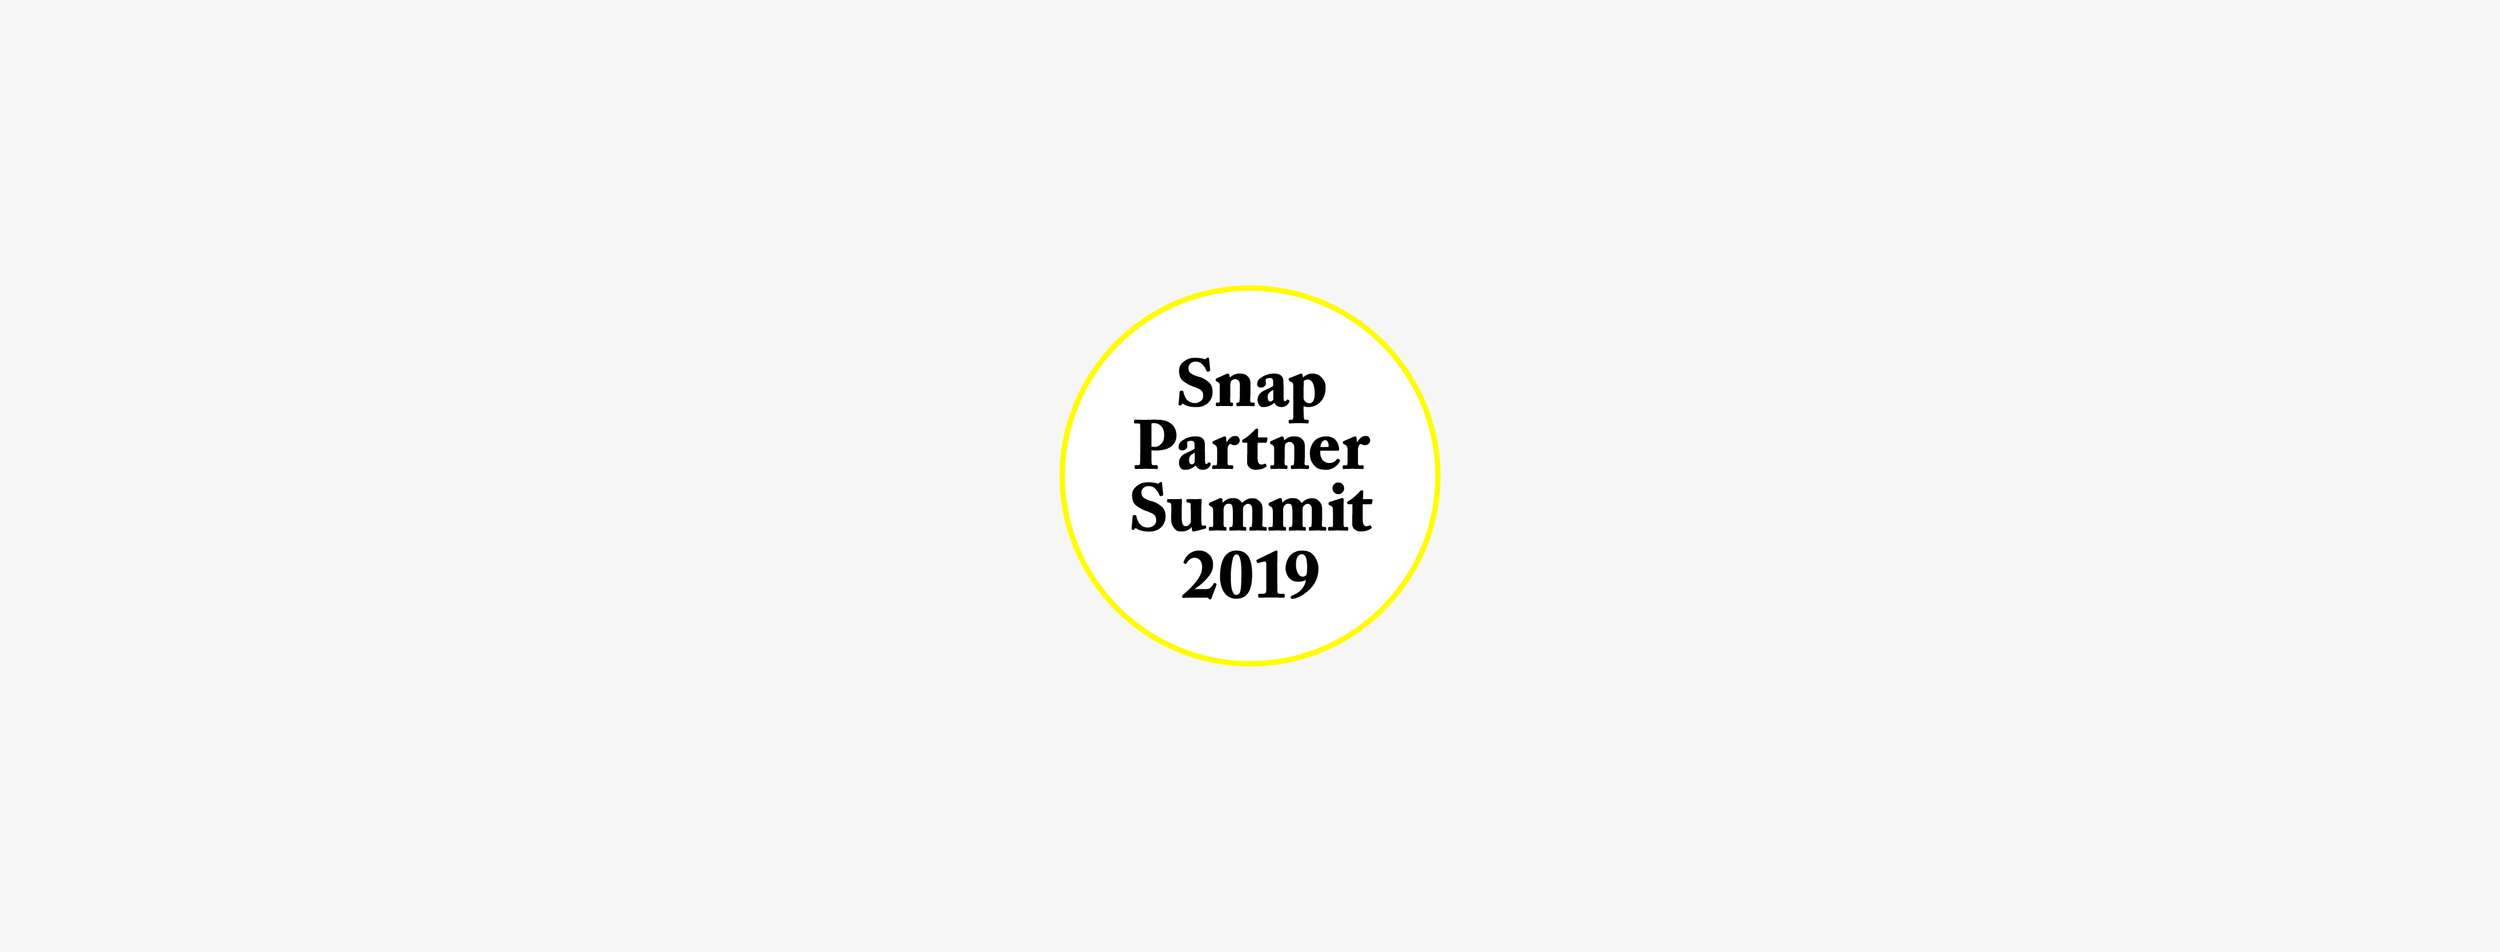 Snap Partner Summit